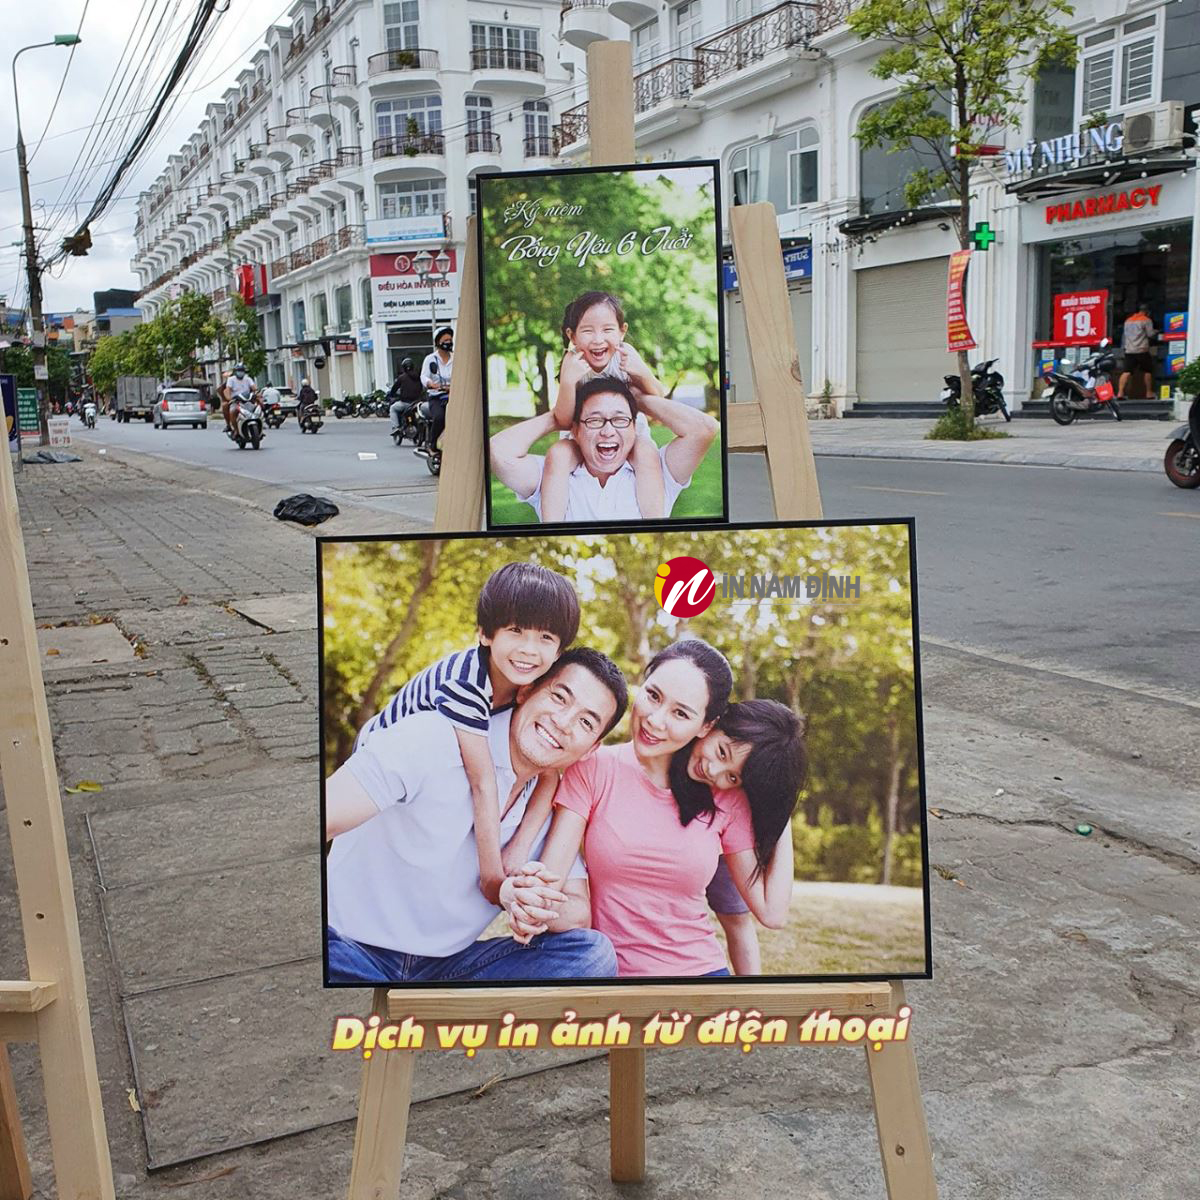 Dịch vụ đóng khung ảnh tại Nam Định nơi lưu giữ kỷ niệm yêu thương